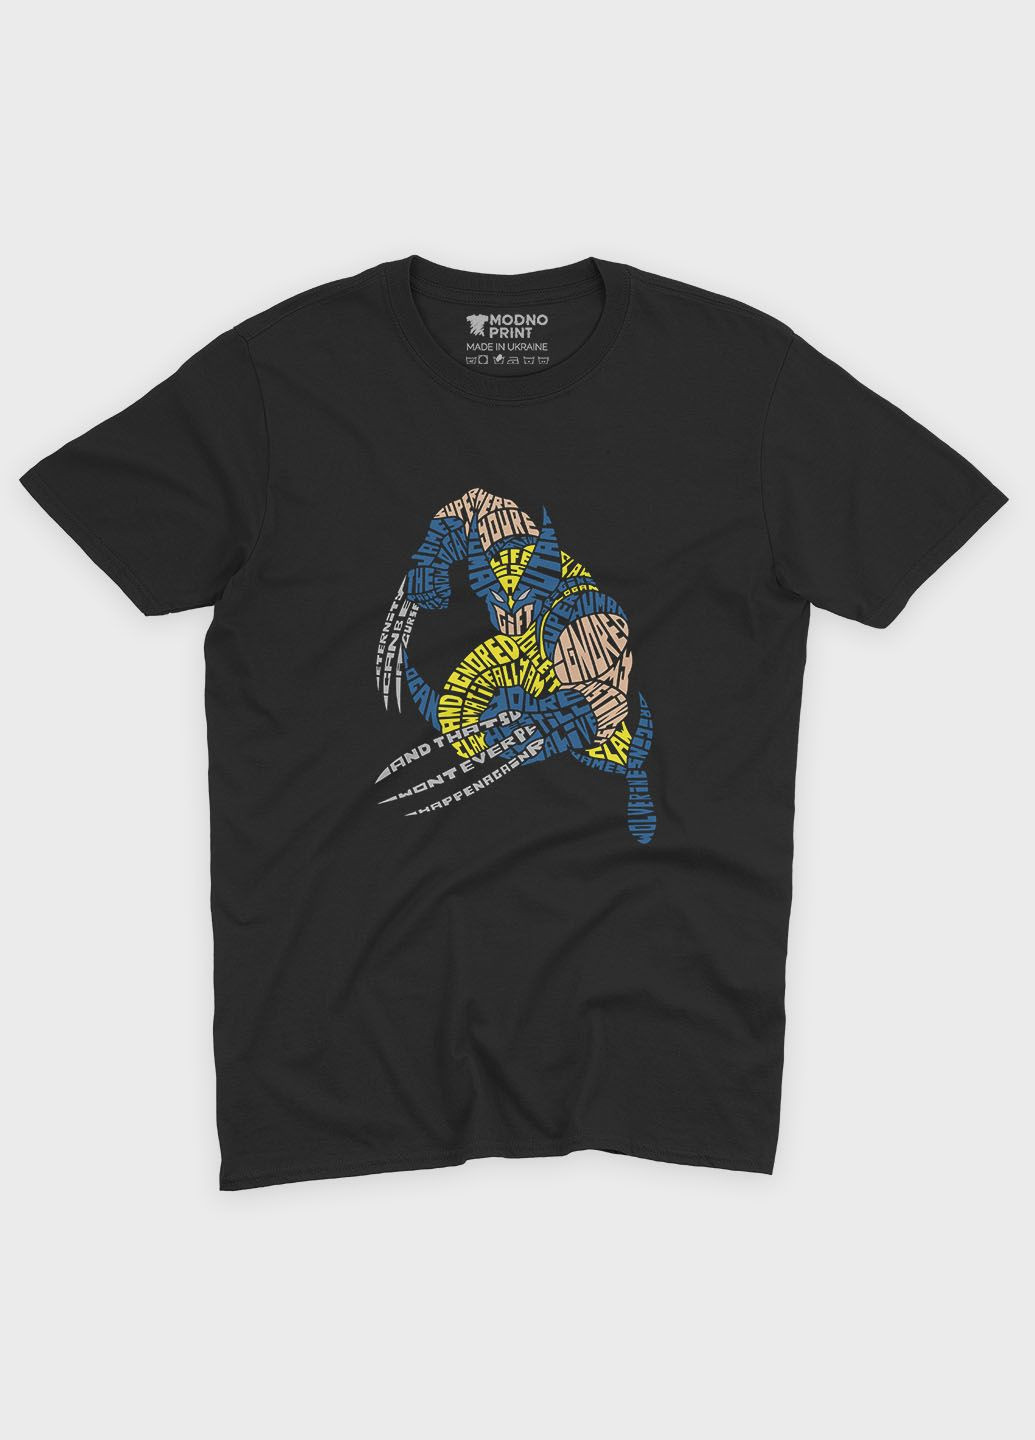 Черная летняя мужская футболка с принтом супергероя - росомаха (ts001-1-bl-006-021-001-f) Modno